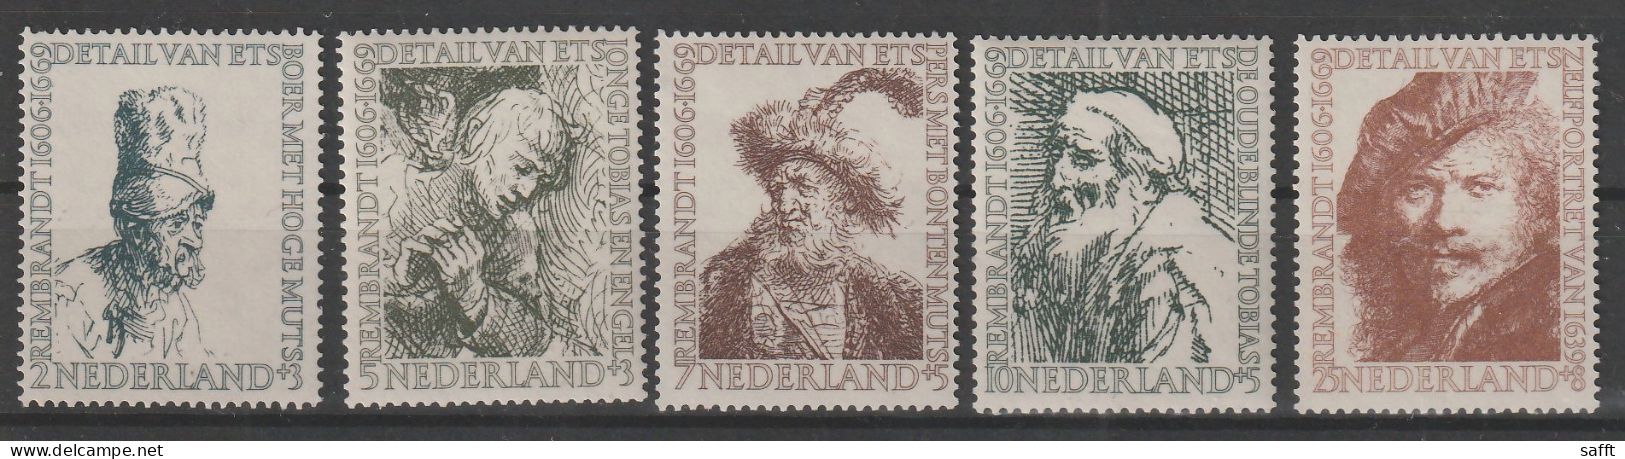 Niederlande 672/676 Postfrisch - Sommermarken 1956 Rembrandt - Ungebraucht